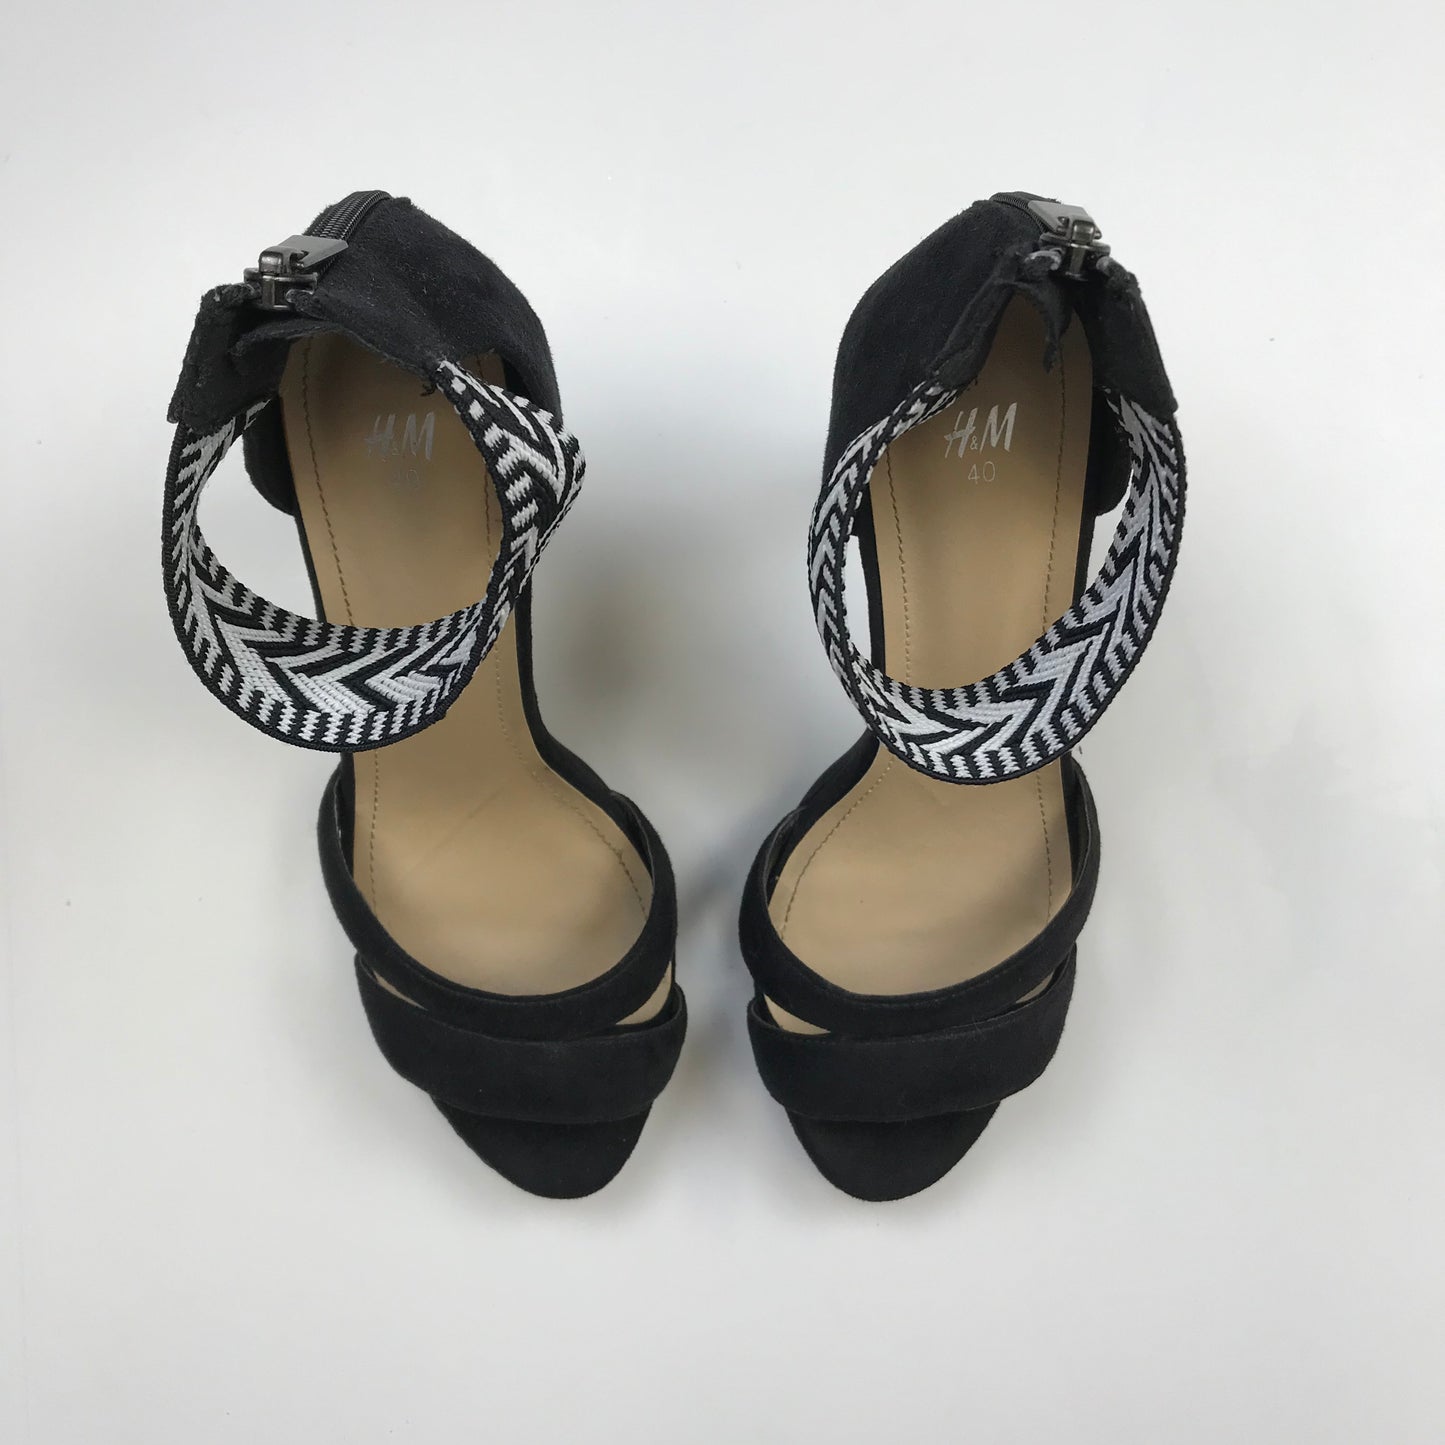 Sandals Heels Stiletto By H&m  Size: 8.5